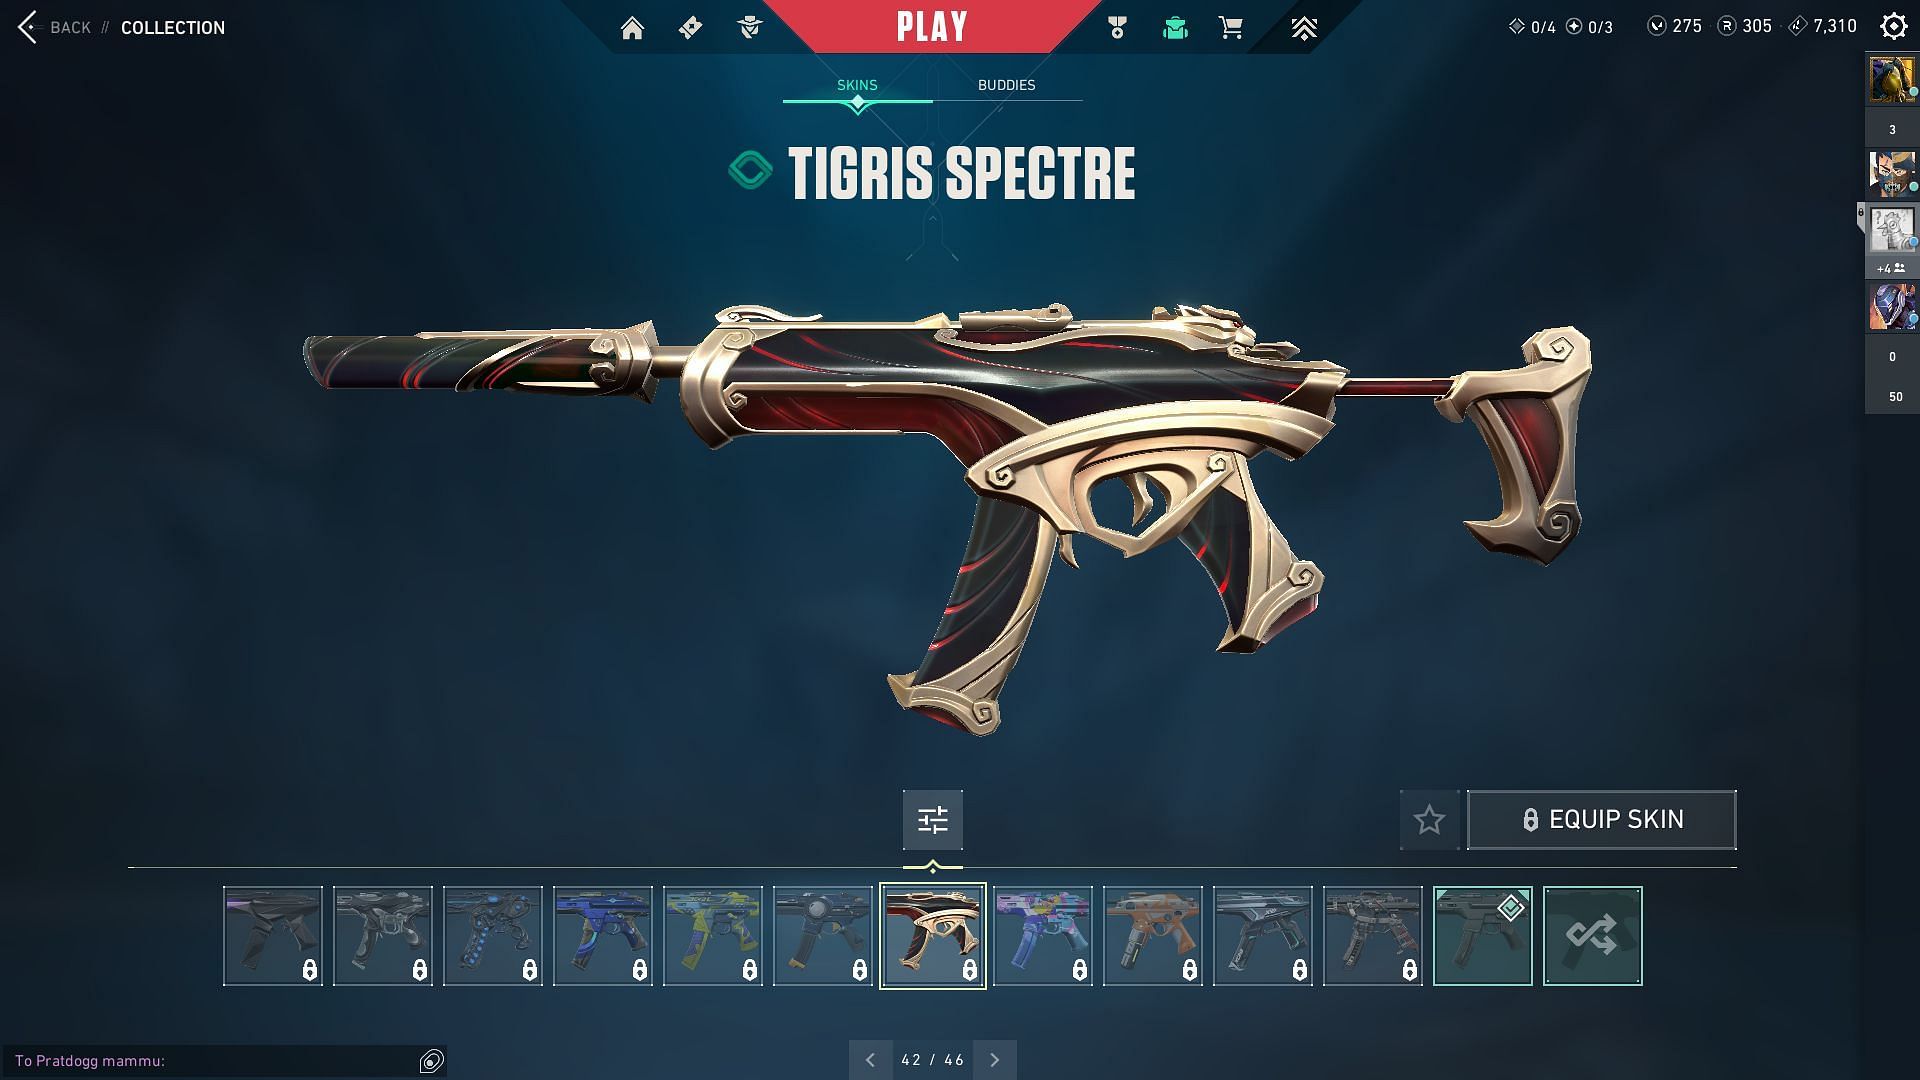 Tigris Spectre (Image via Sportskeeda and Riot Games)